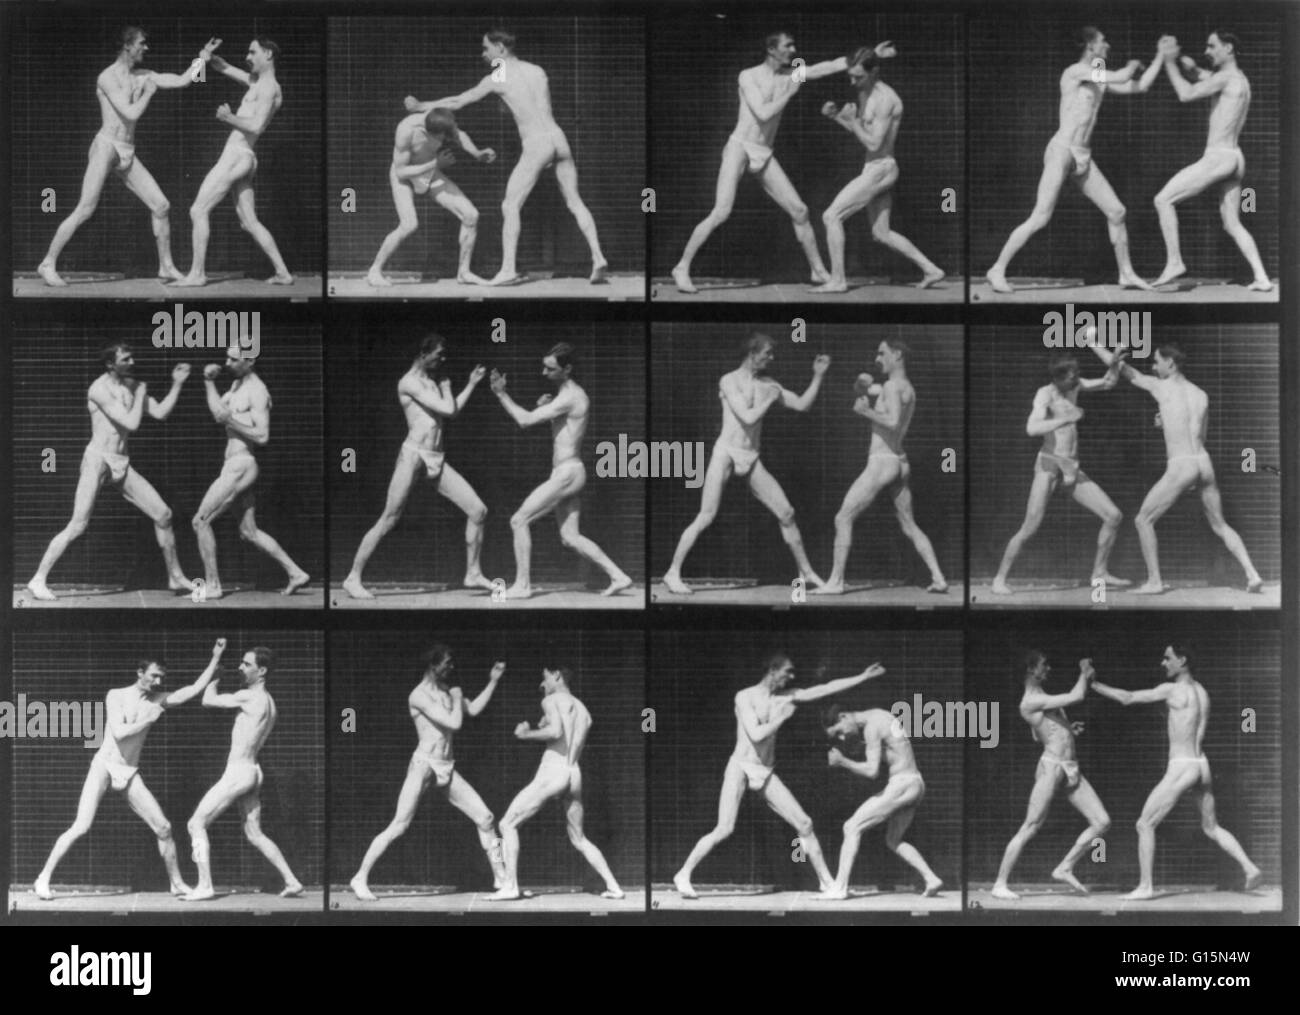 Muybridge locomozione umana, uomini pugilato, 1887. 12 telaio motion picture di due uomini boxe. James Eadweard Muybridge (9 aprile 1830 - 8 Maggio 1904) era un fotografo inglese importante per il suo lavoro pionieristico in studi fotografici di movimento e in motion-p Foto Stock